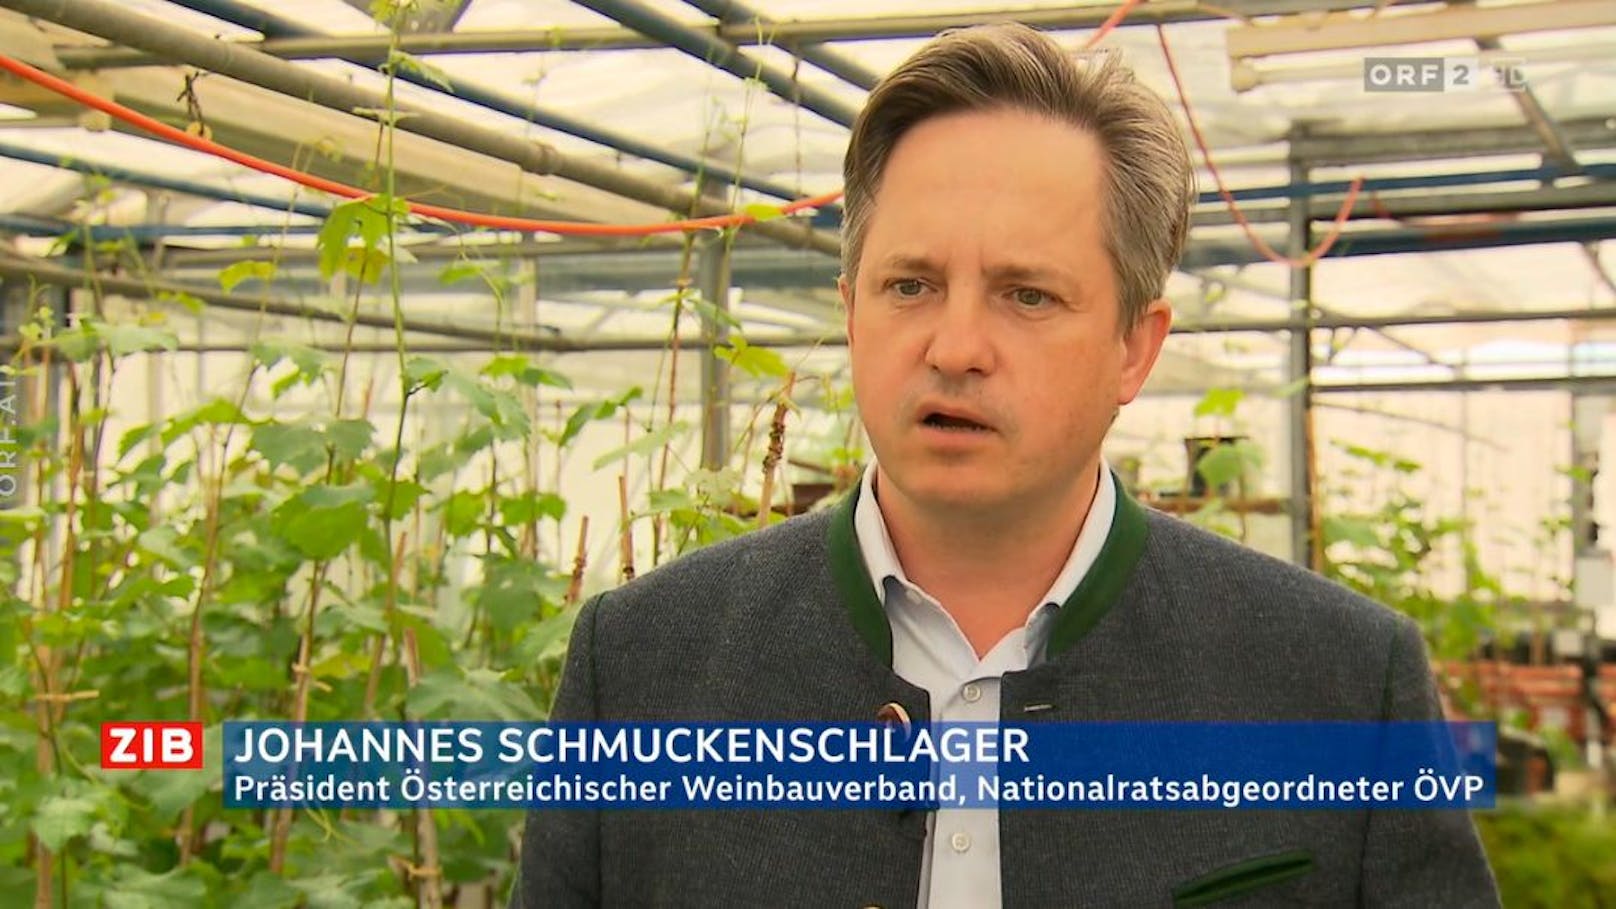 Johannes Schmuckenschlager ist Präsident des Weinbauverbands und Nationalratsabgeordneter der ÖVP.